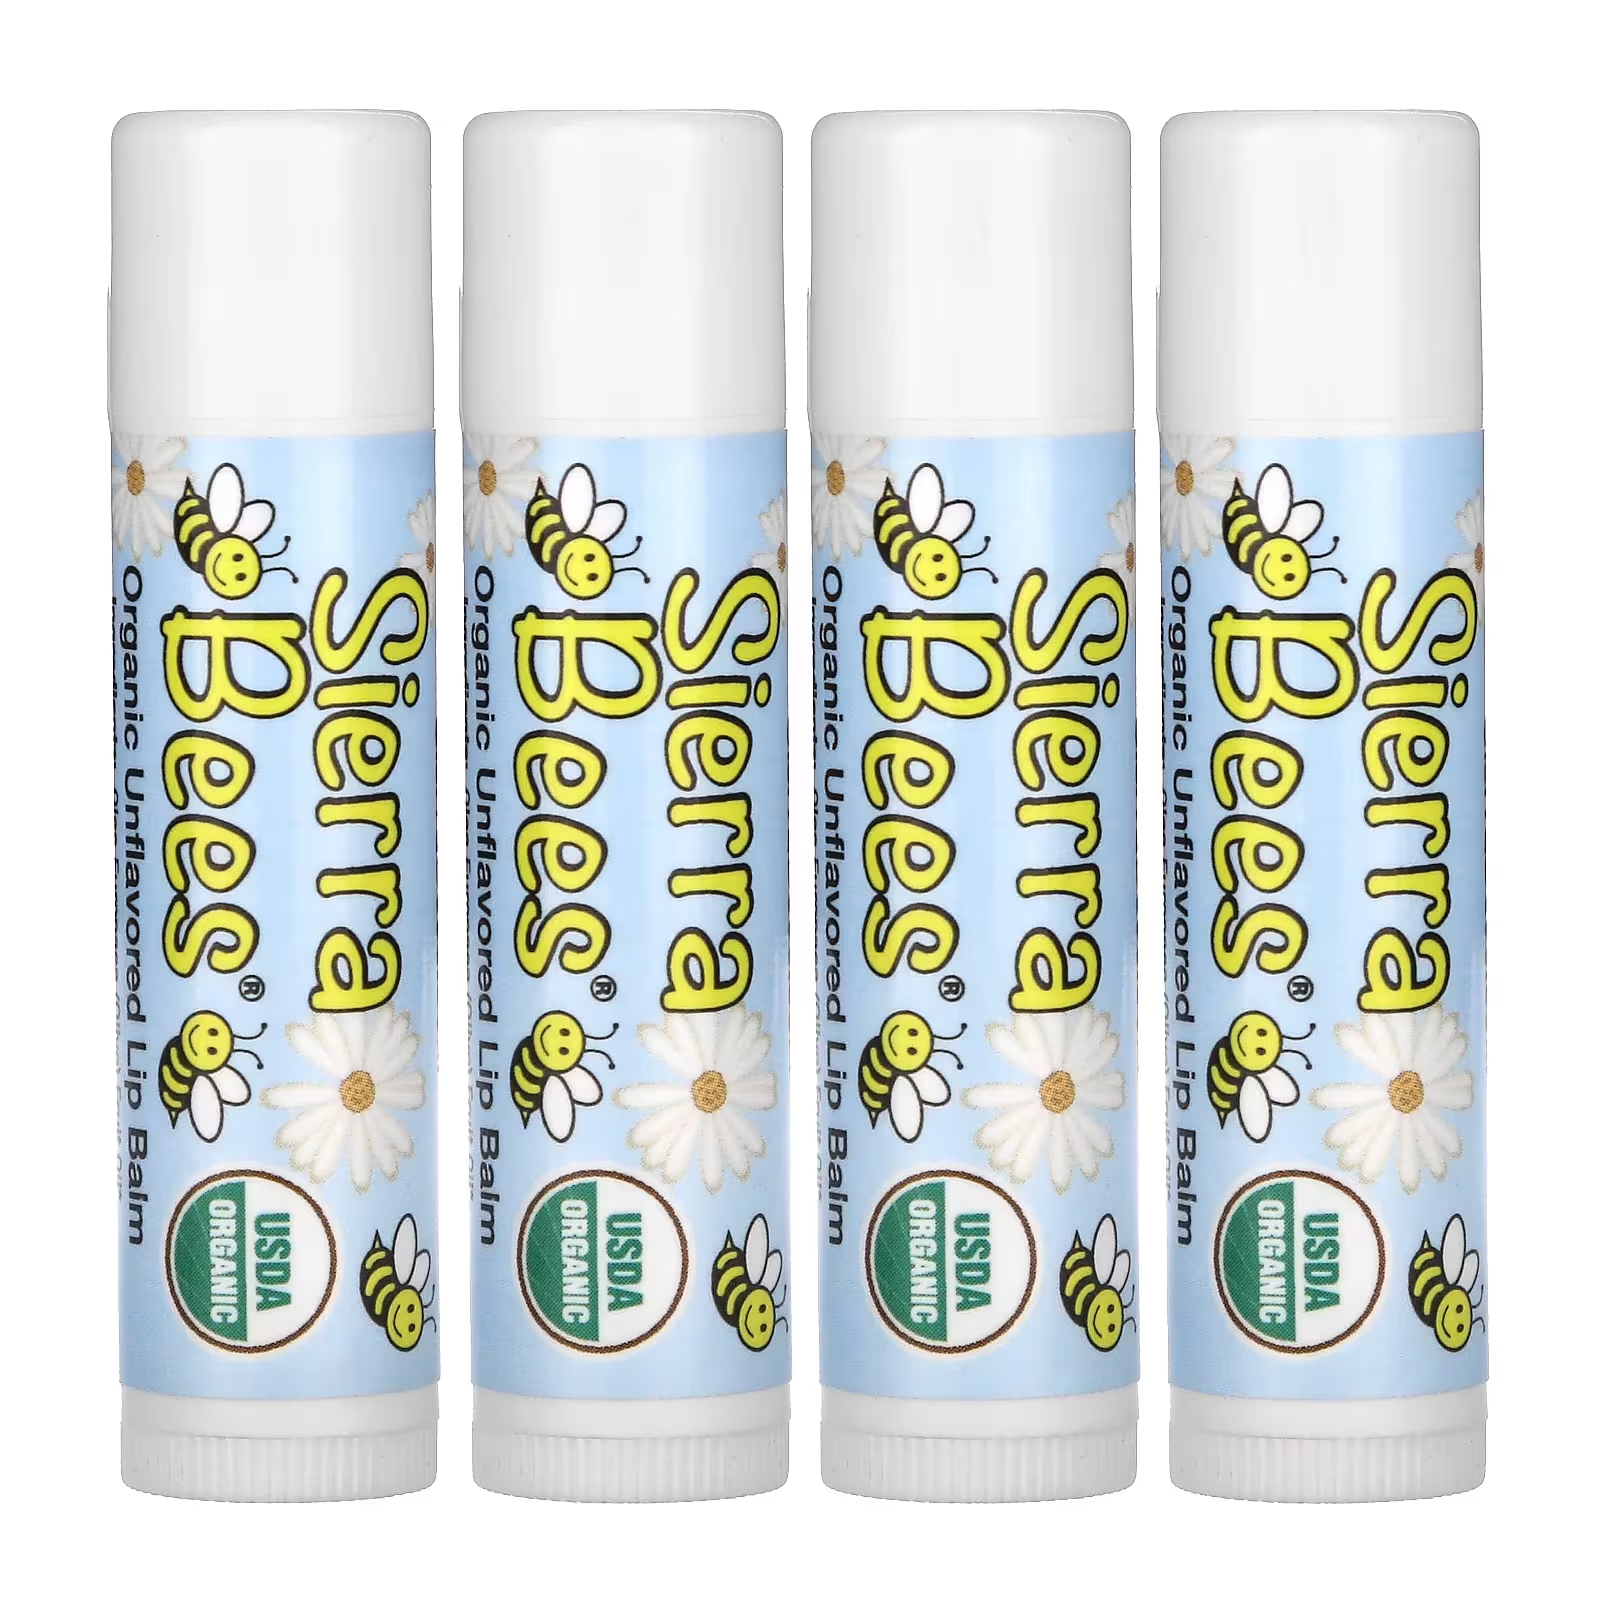 Органические бальзамы для губ Sierra Bees, 4 упаковки по 4,25 г sierra bees органические бальзамы для губ гранат 4 штуки по 4 25 г 0 15 унции